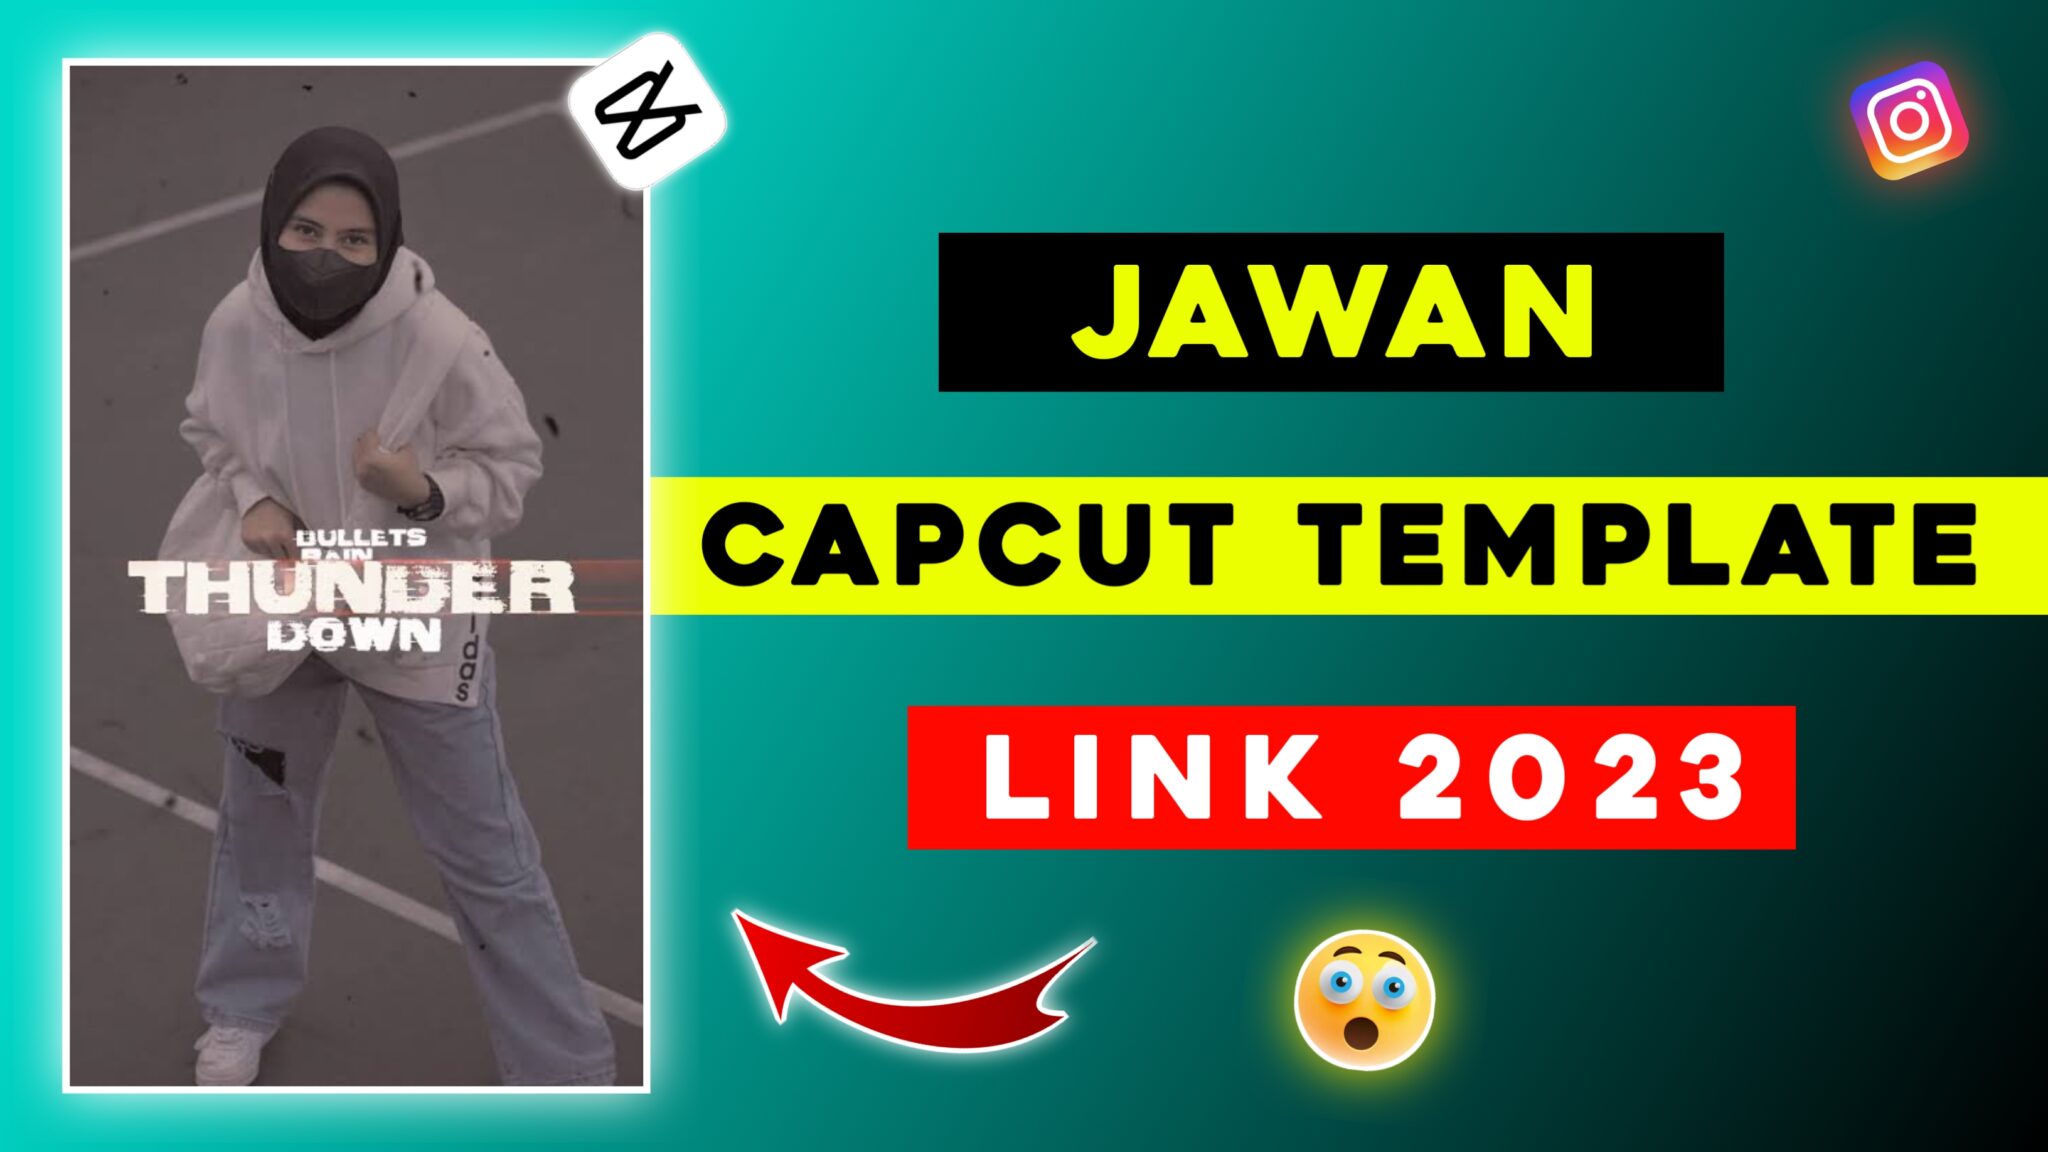 jawan-capcut-template-link-2023-tahir-editz